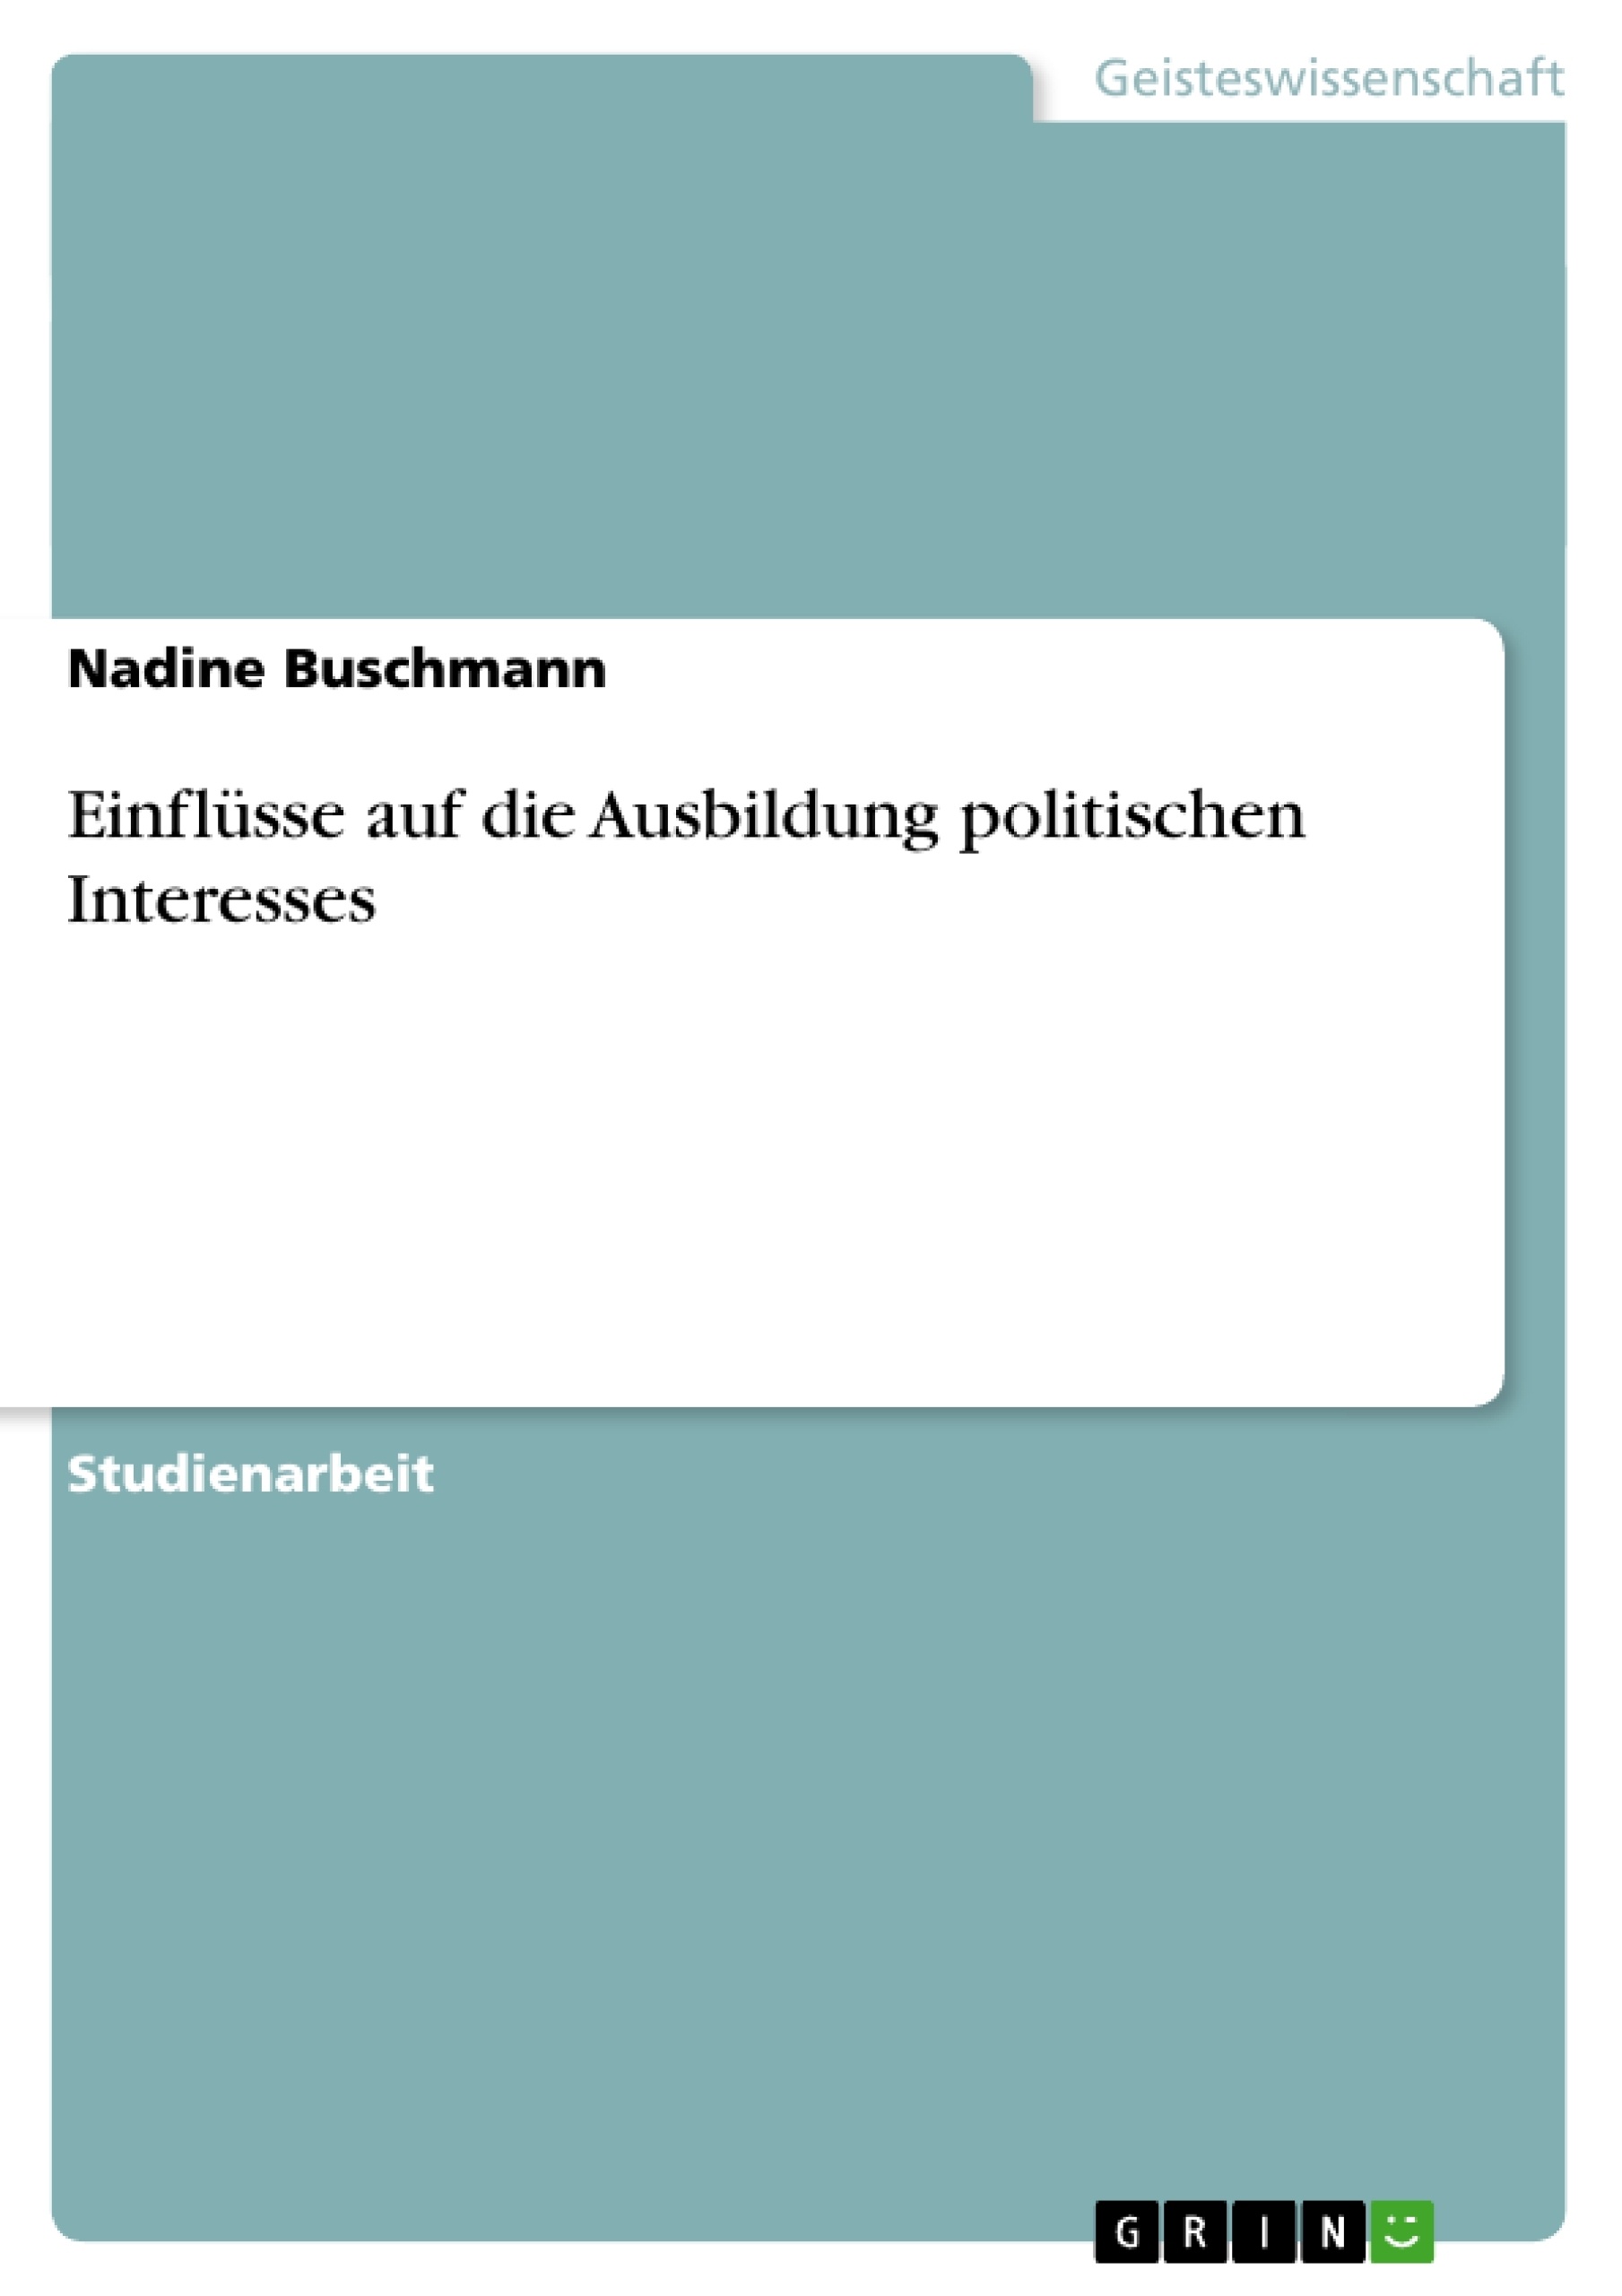 Title: Einflüsse auf die Ausbildung politischen Interesses